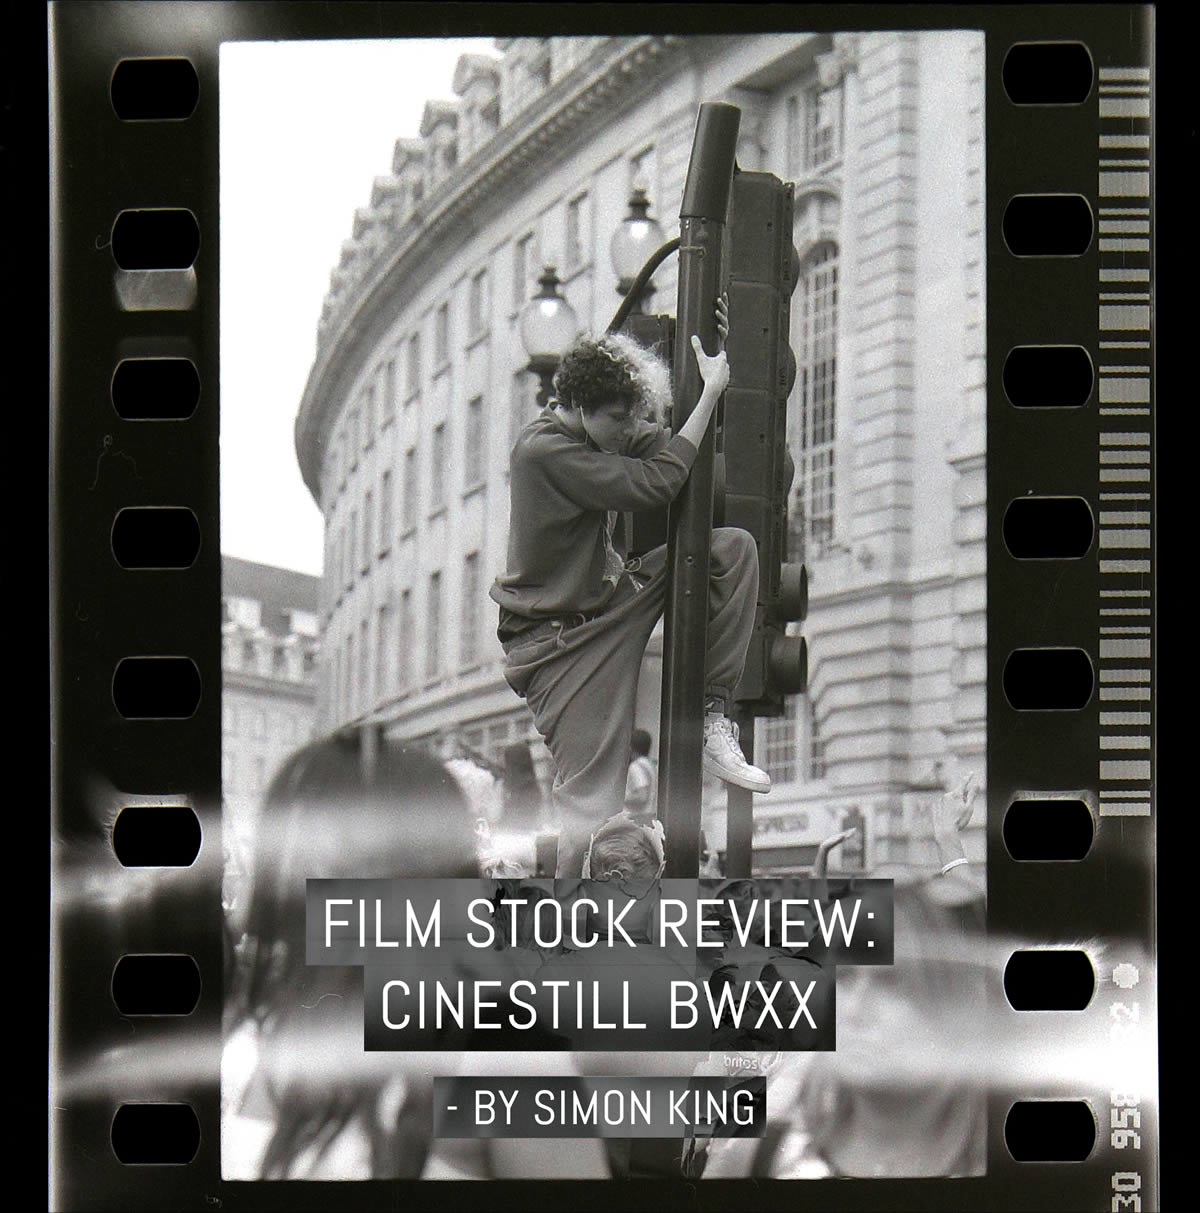 Film stock review: Cinestill BWXX